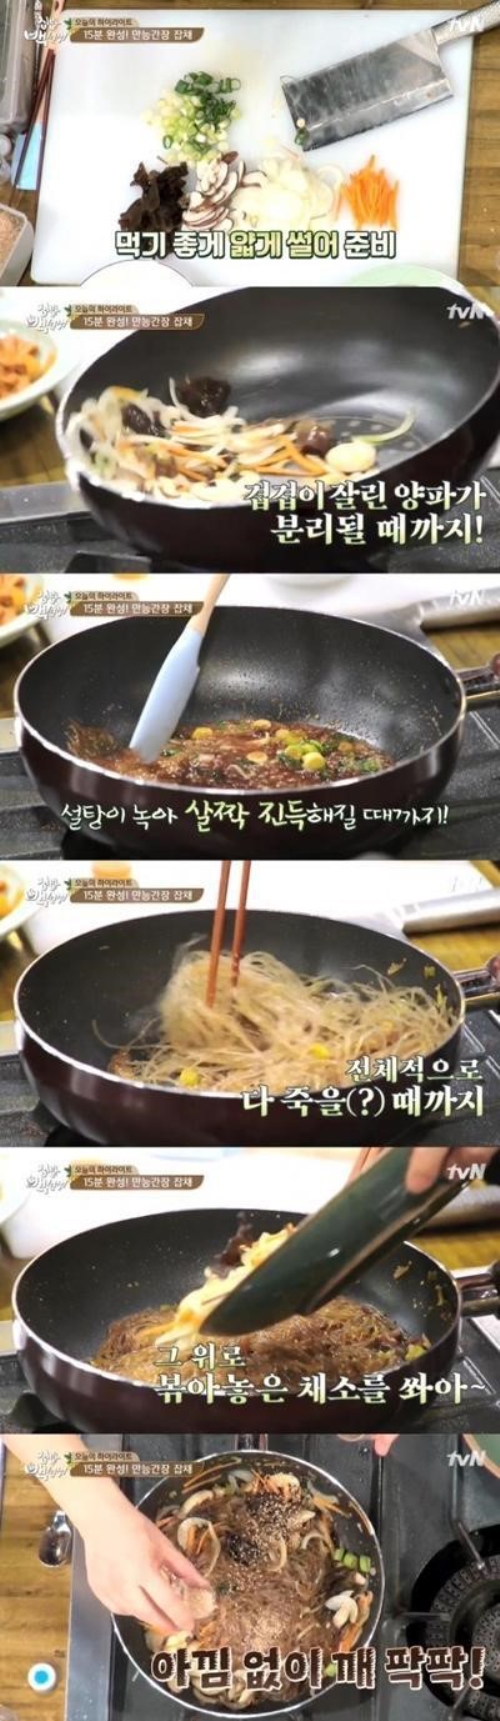 집밥 백선생' 백종원, 15분 간단 잡채 레시피 공개 | 모바일 Jtbc뉴스